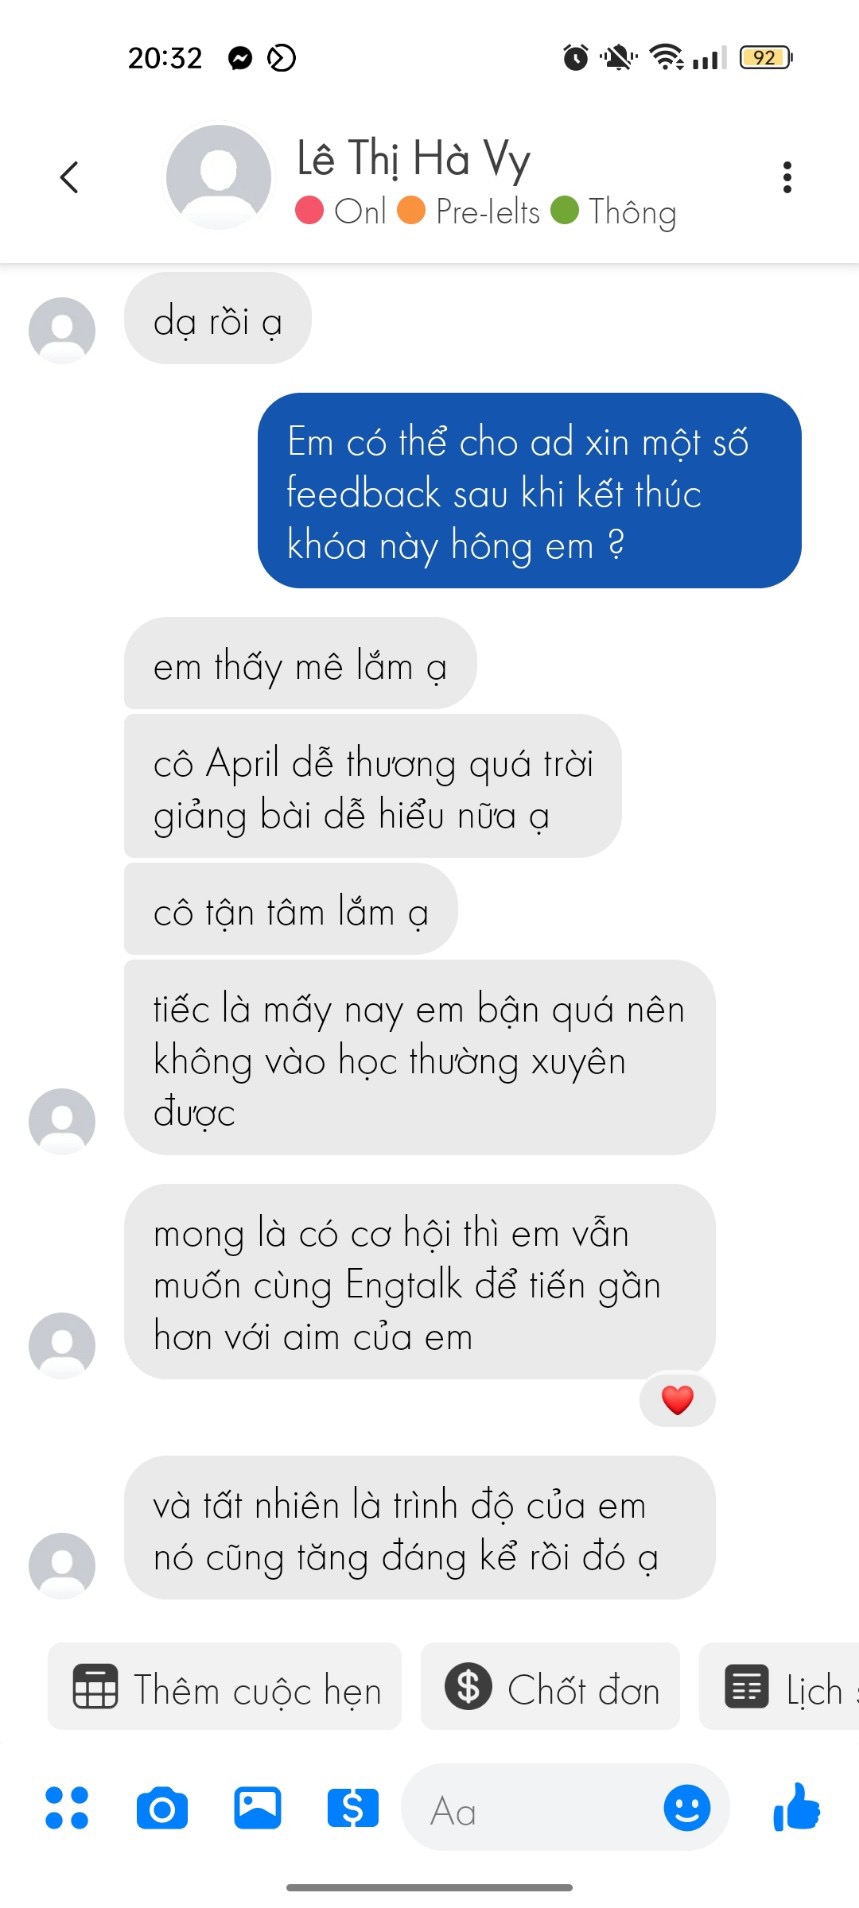 Lê Thị Hà Vy